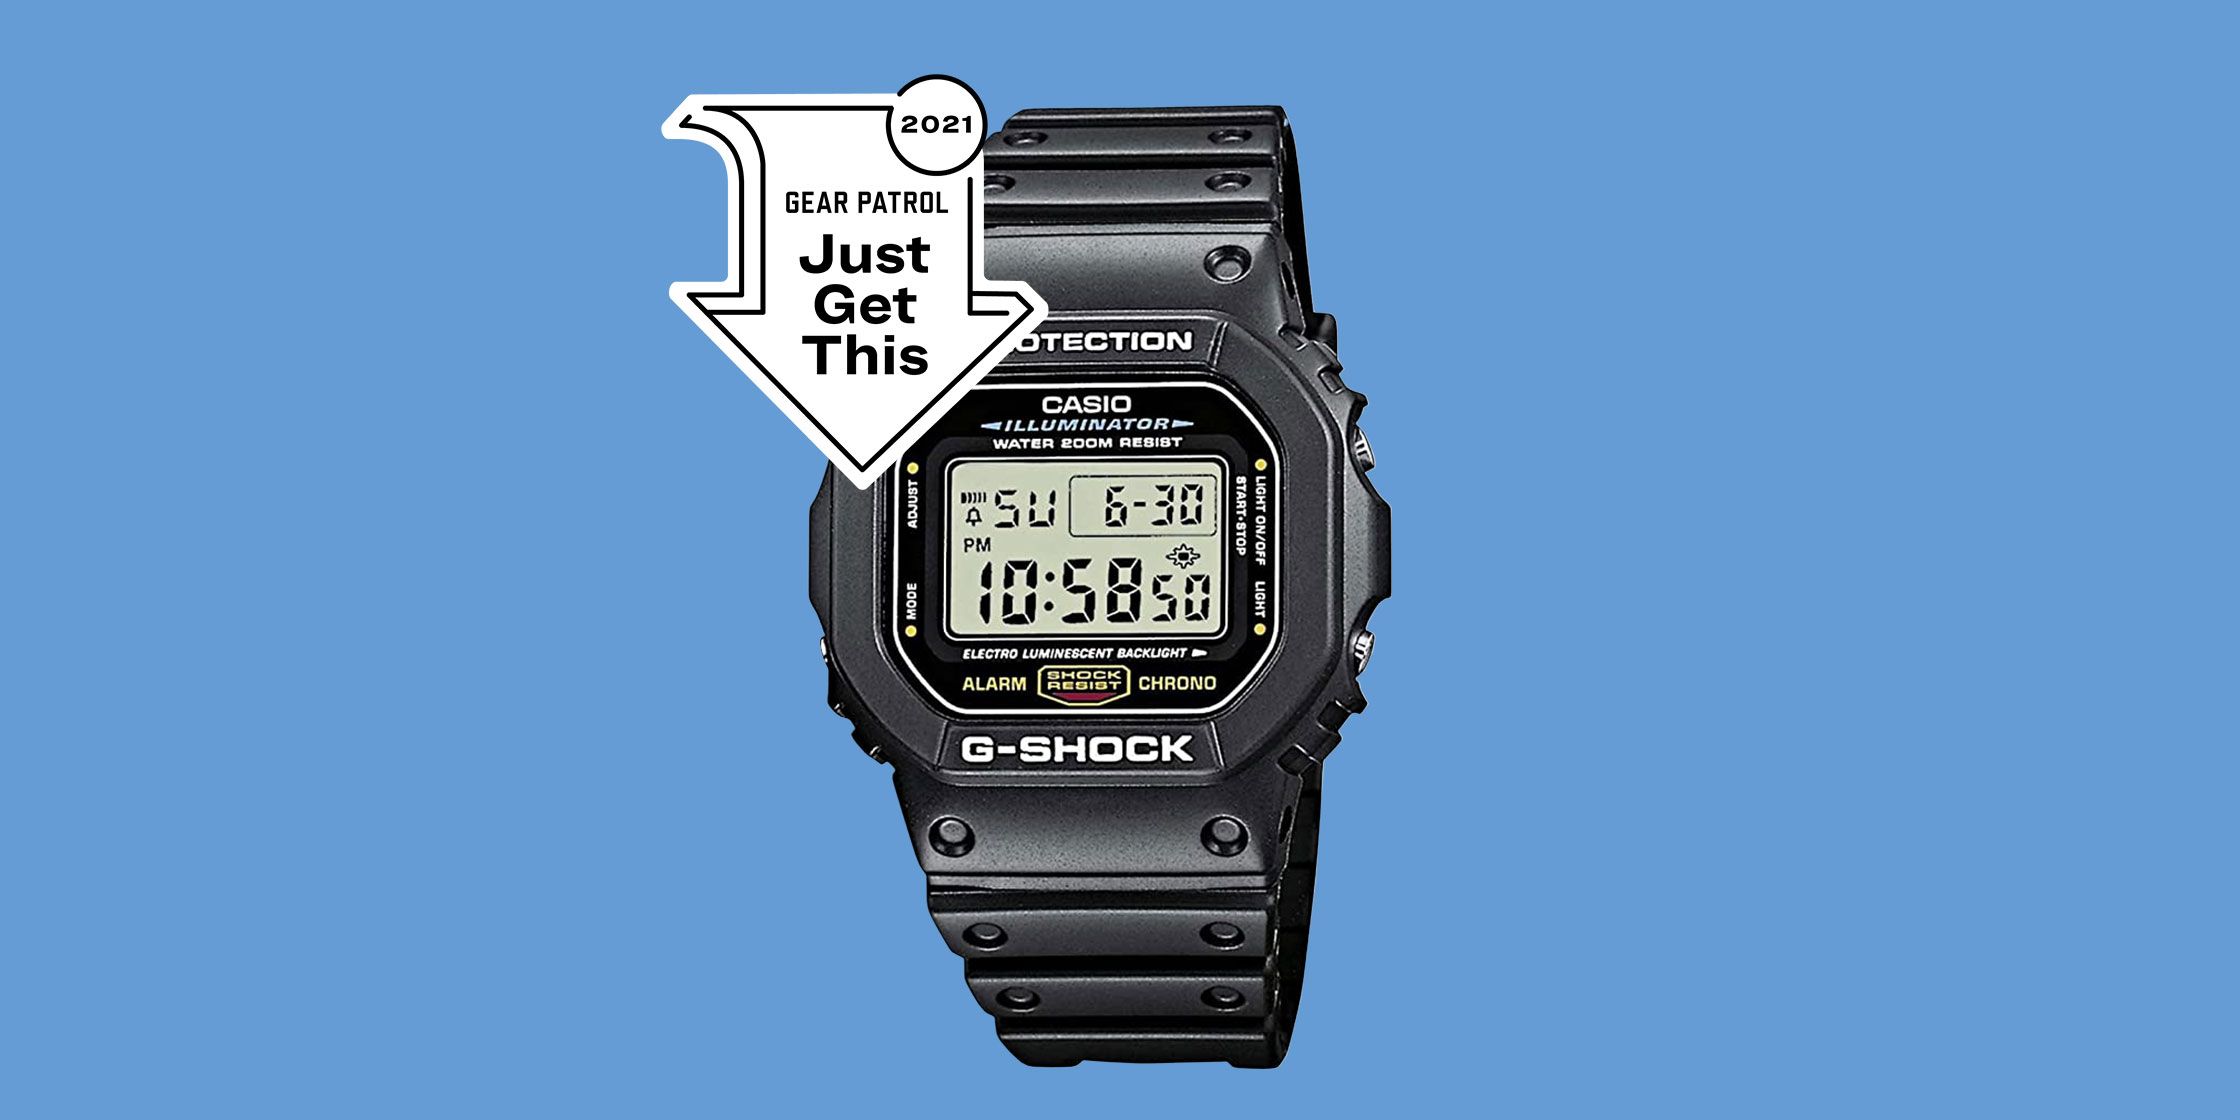 CASIO G-Shock